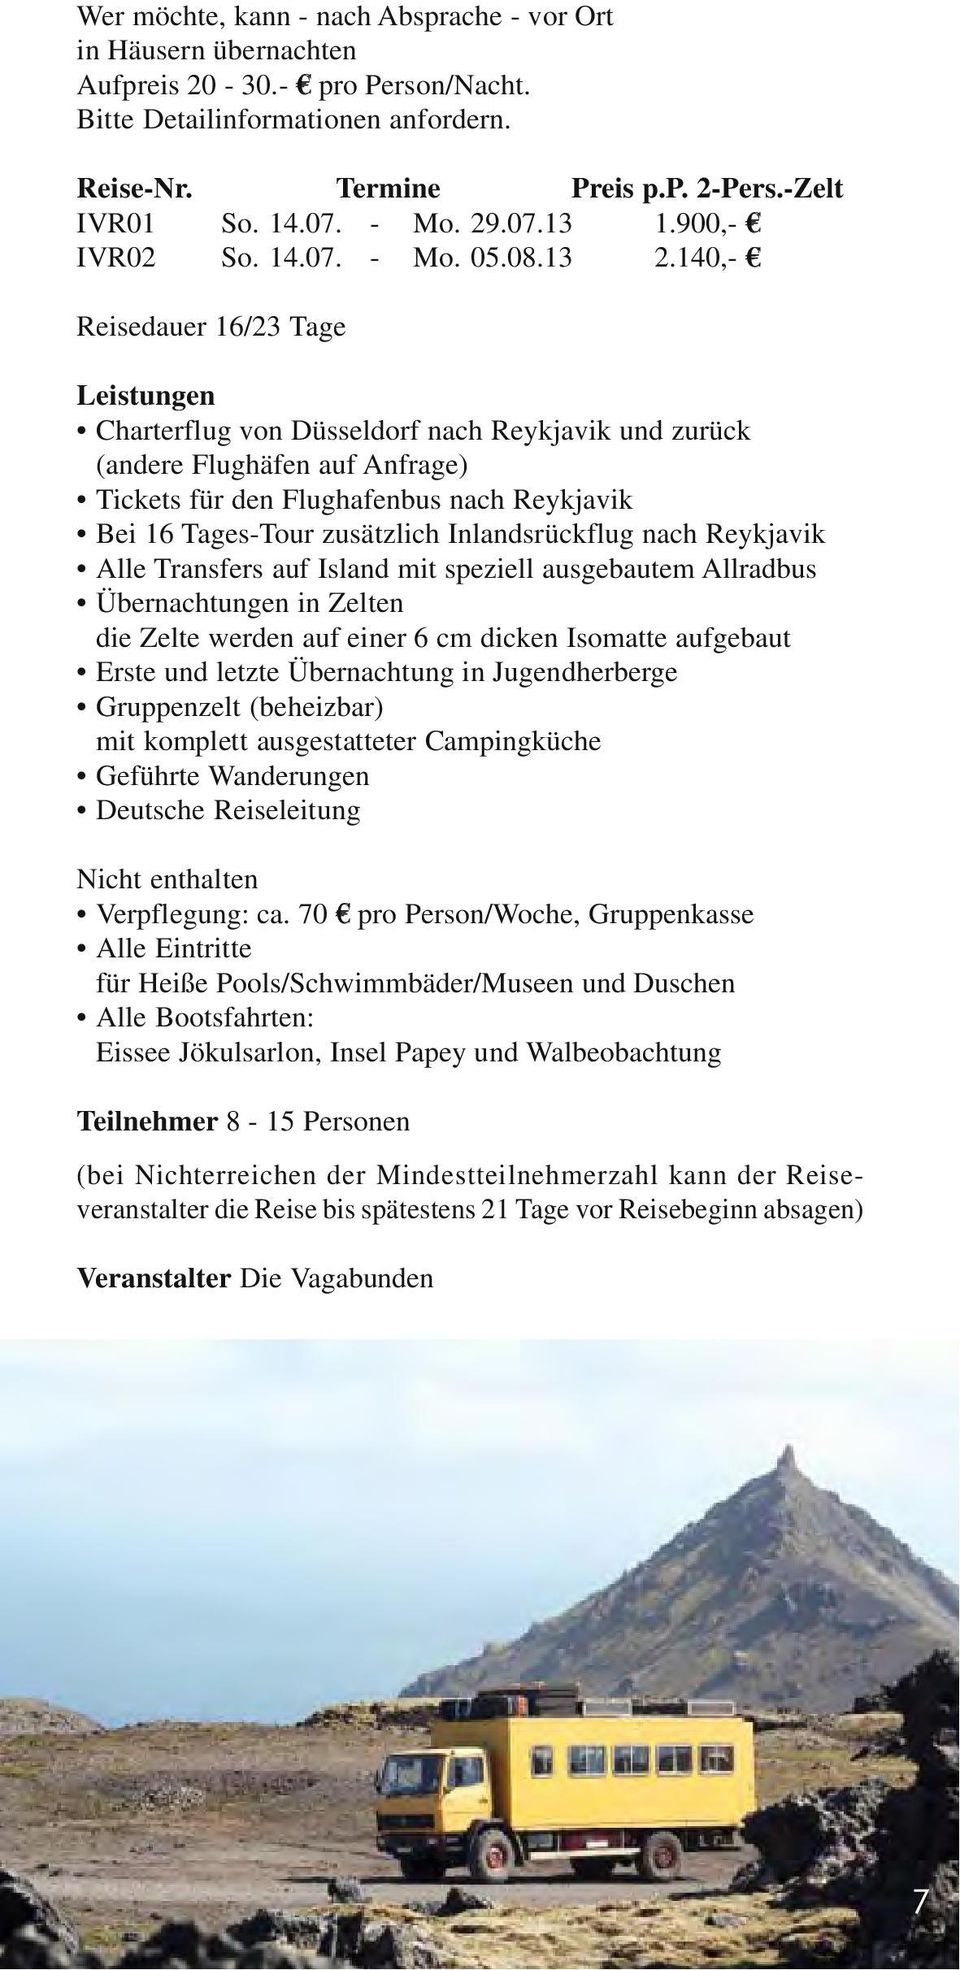 140,- Reisedauer 16/23 Tage Leistungen Charterflug von Düsseldorf nach Reykjavik und zurück (andere Flughäfen auf Anfrage) Tickets für den Flughafenbus nach Reykjavik Bei 16 Tages-Tour zusätzlich